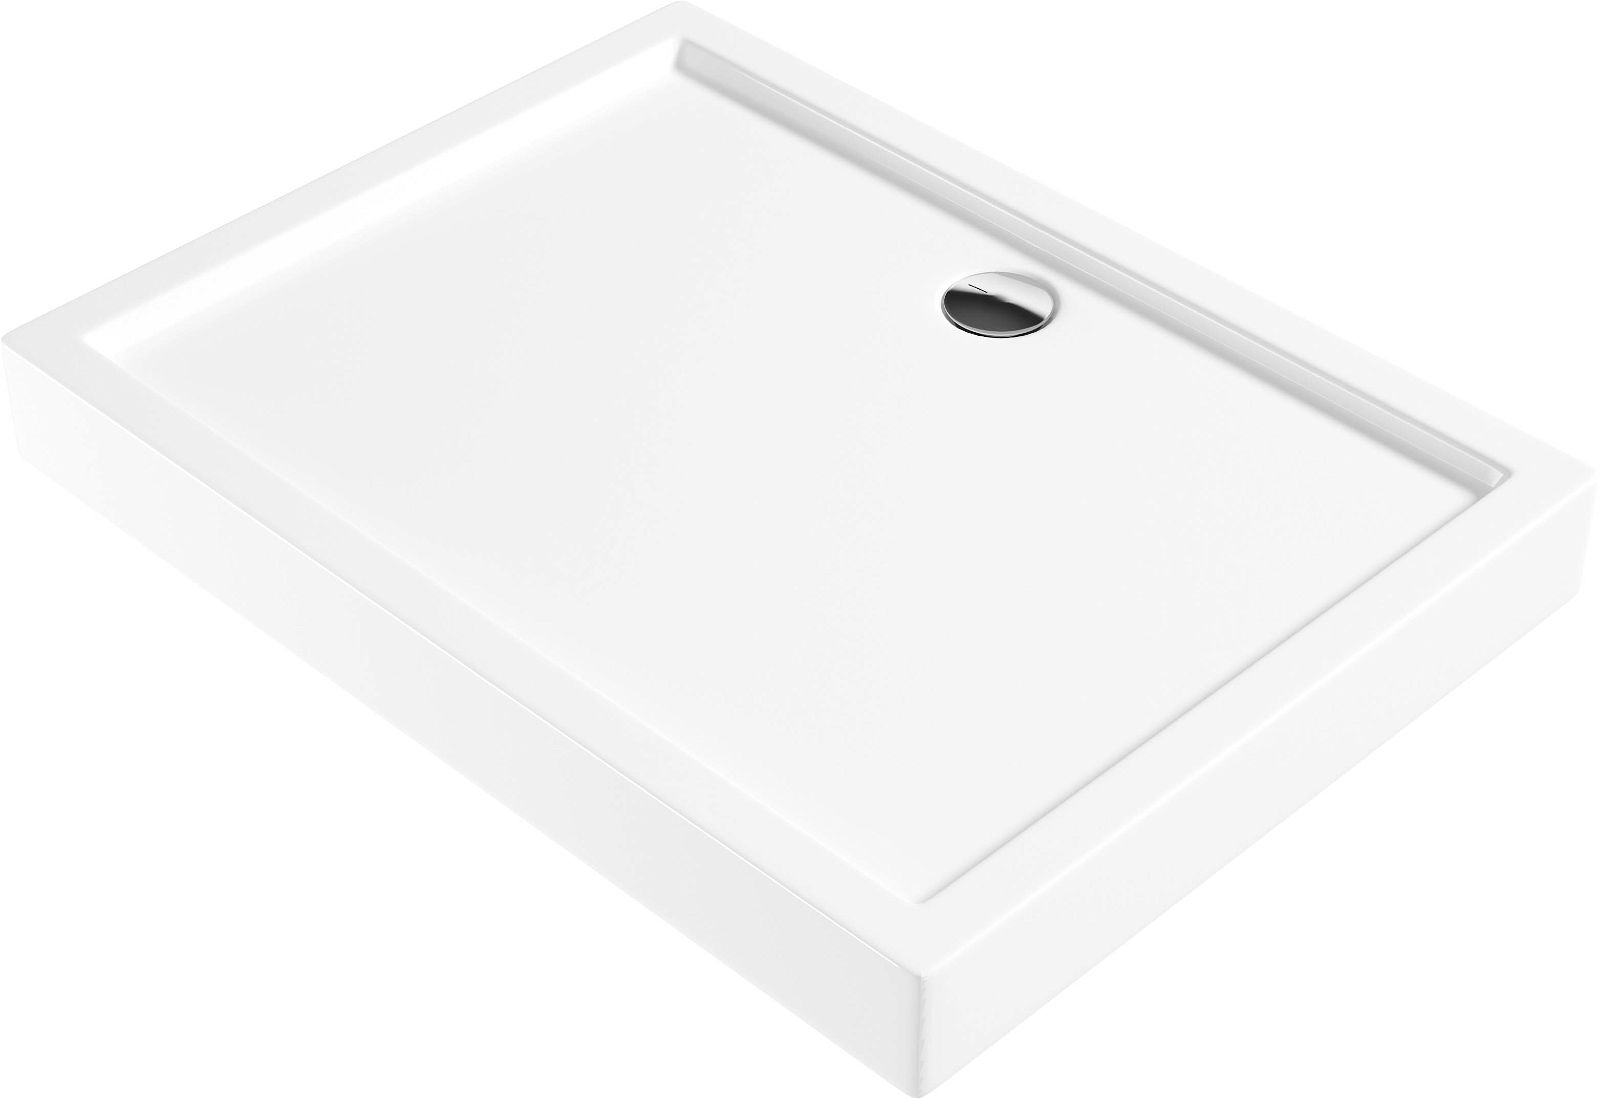 Acrylic shower tray, rectangular, 100x80 cm - KTJ_046B - Główne zdjęcie produktowe